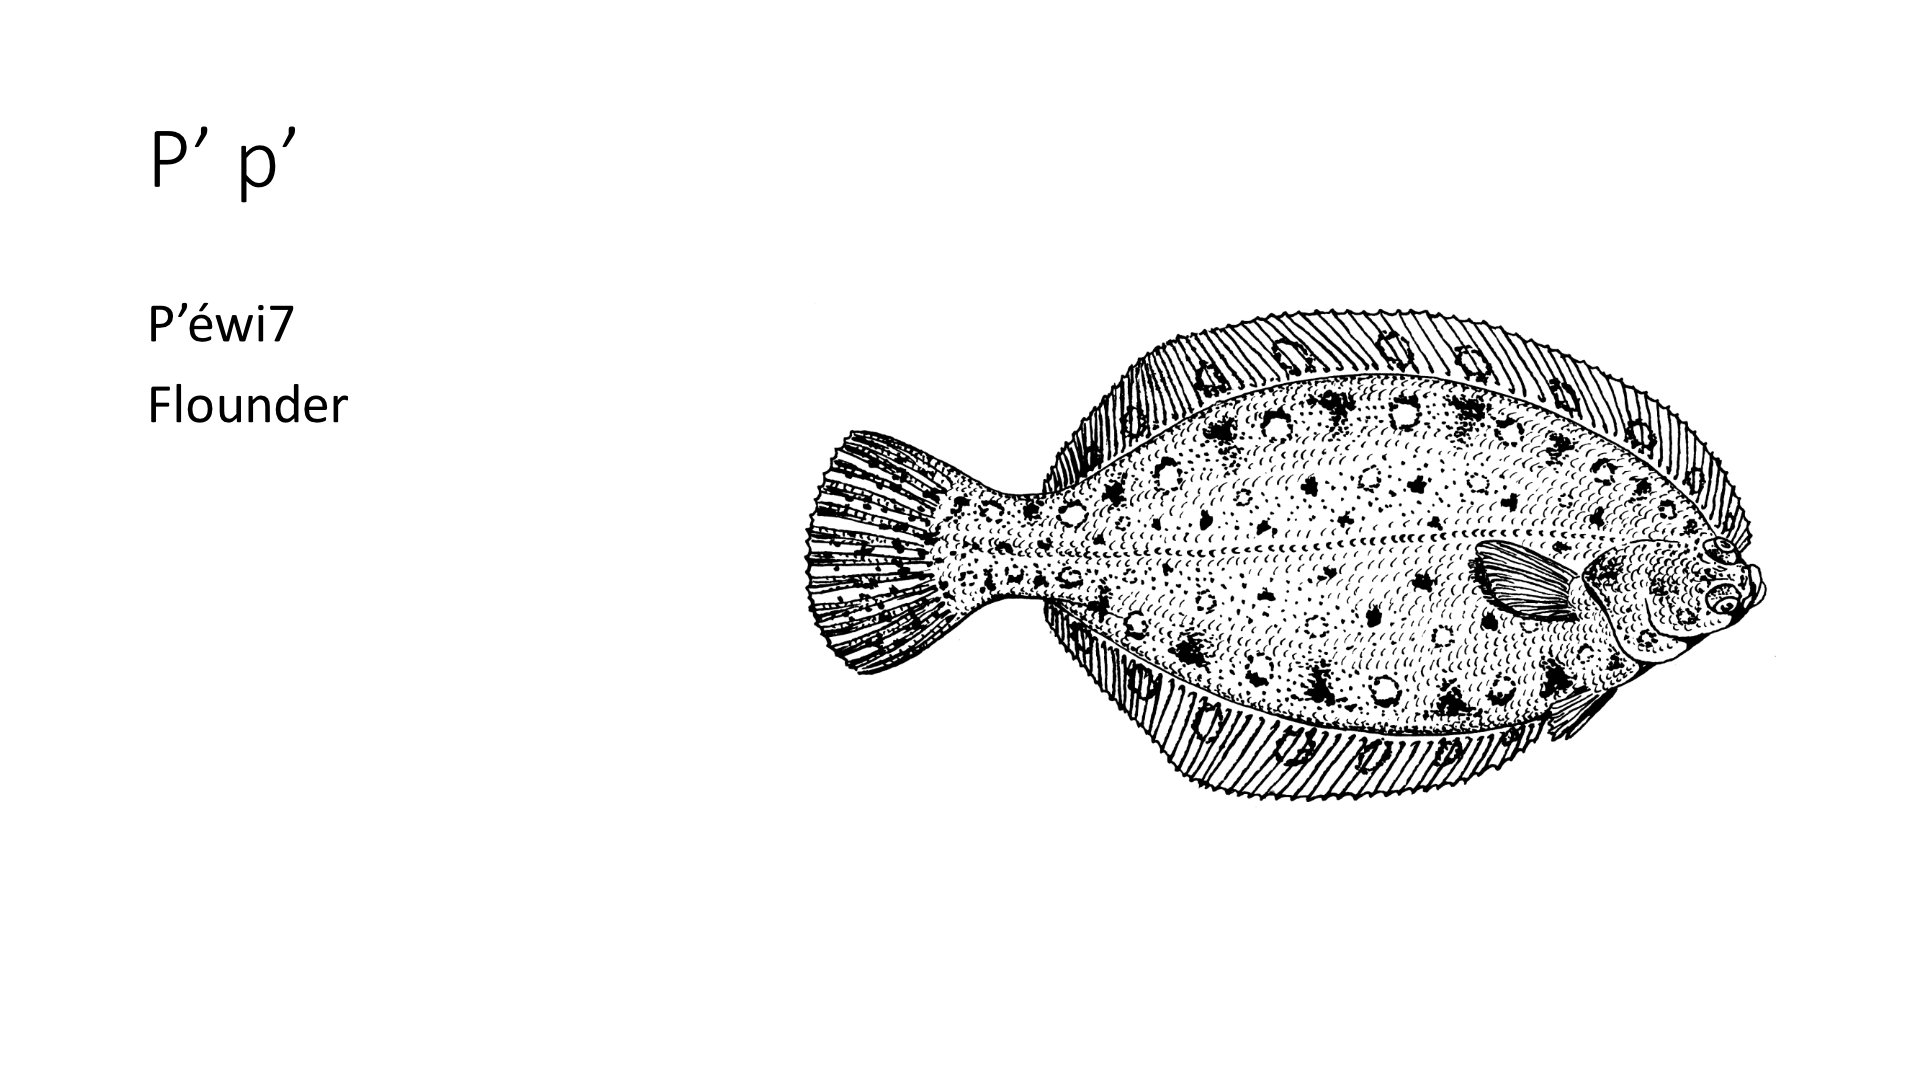 Illustration of a flounder